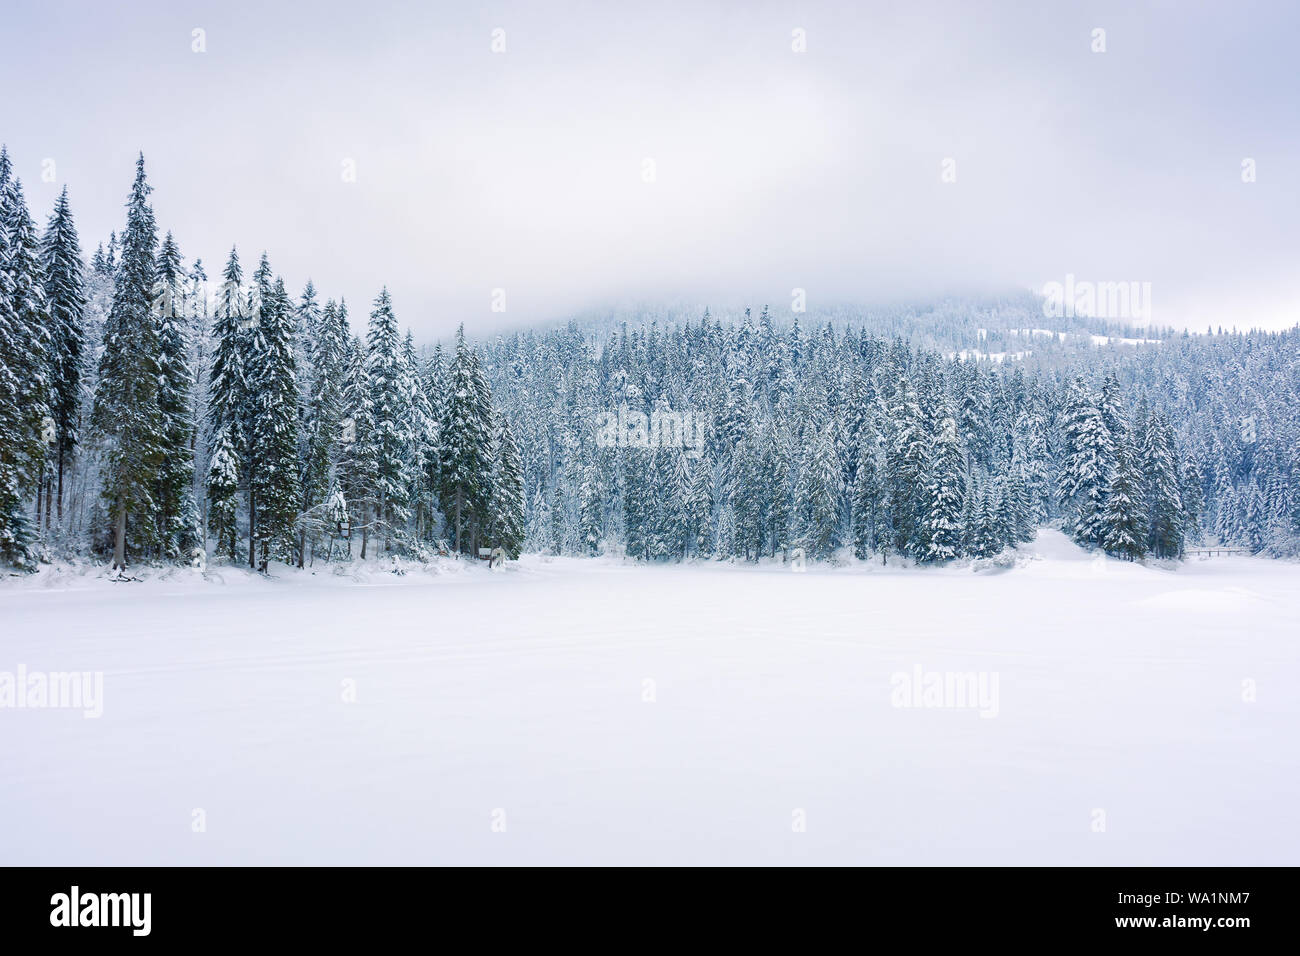 Nadelwald auf schneebedeckten See. schöne Natur Landschaft an einem bewölkten Tag im Winter Bäume im Schnee. düsterer bewölkten Himmel in ihnen Morgen. Stockfoto